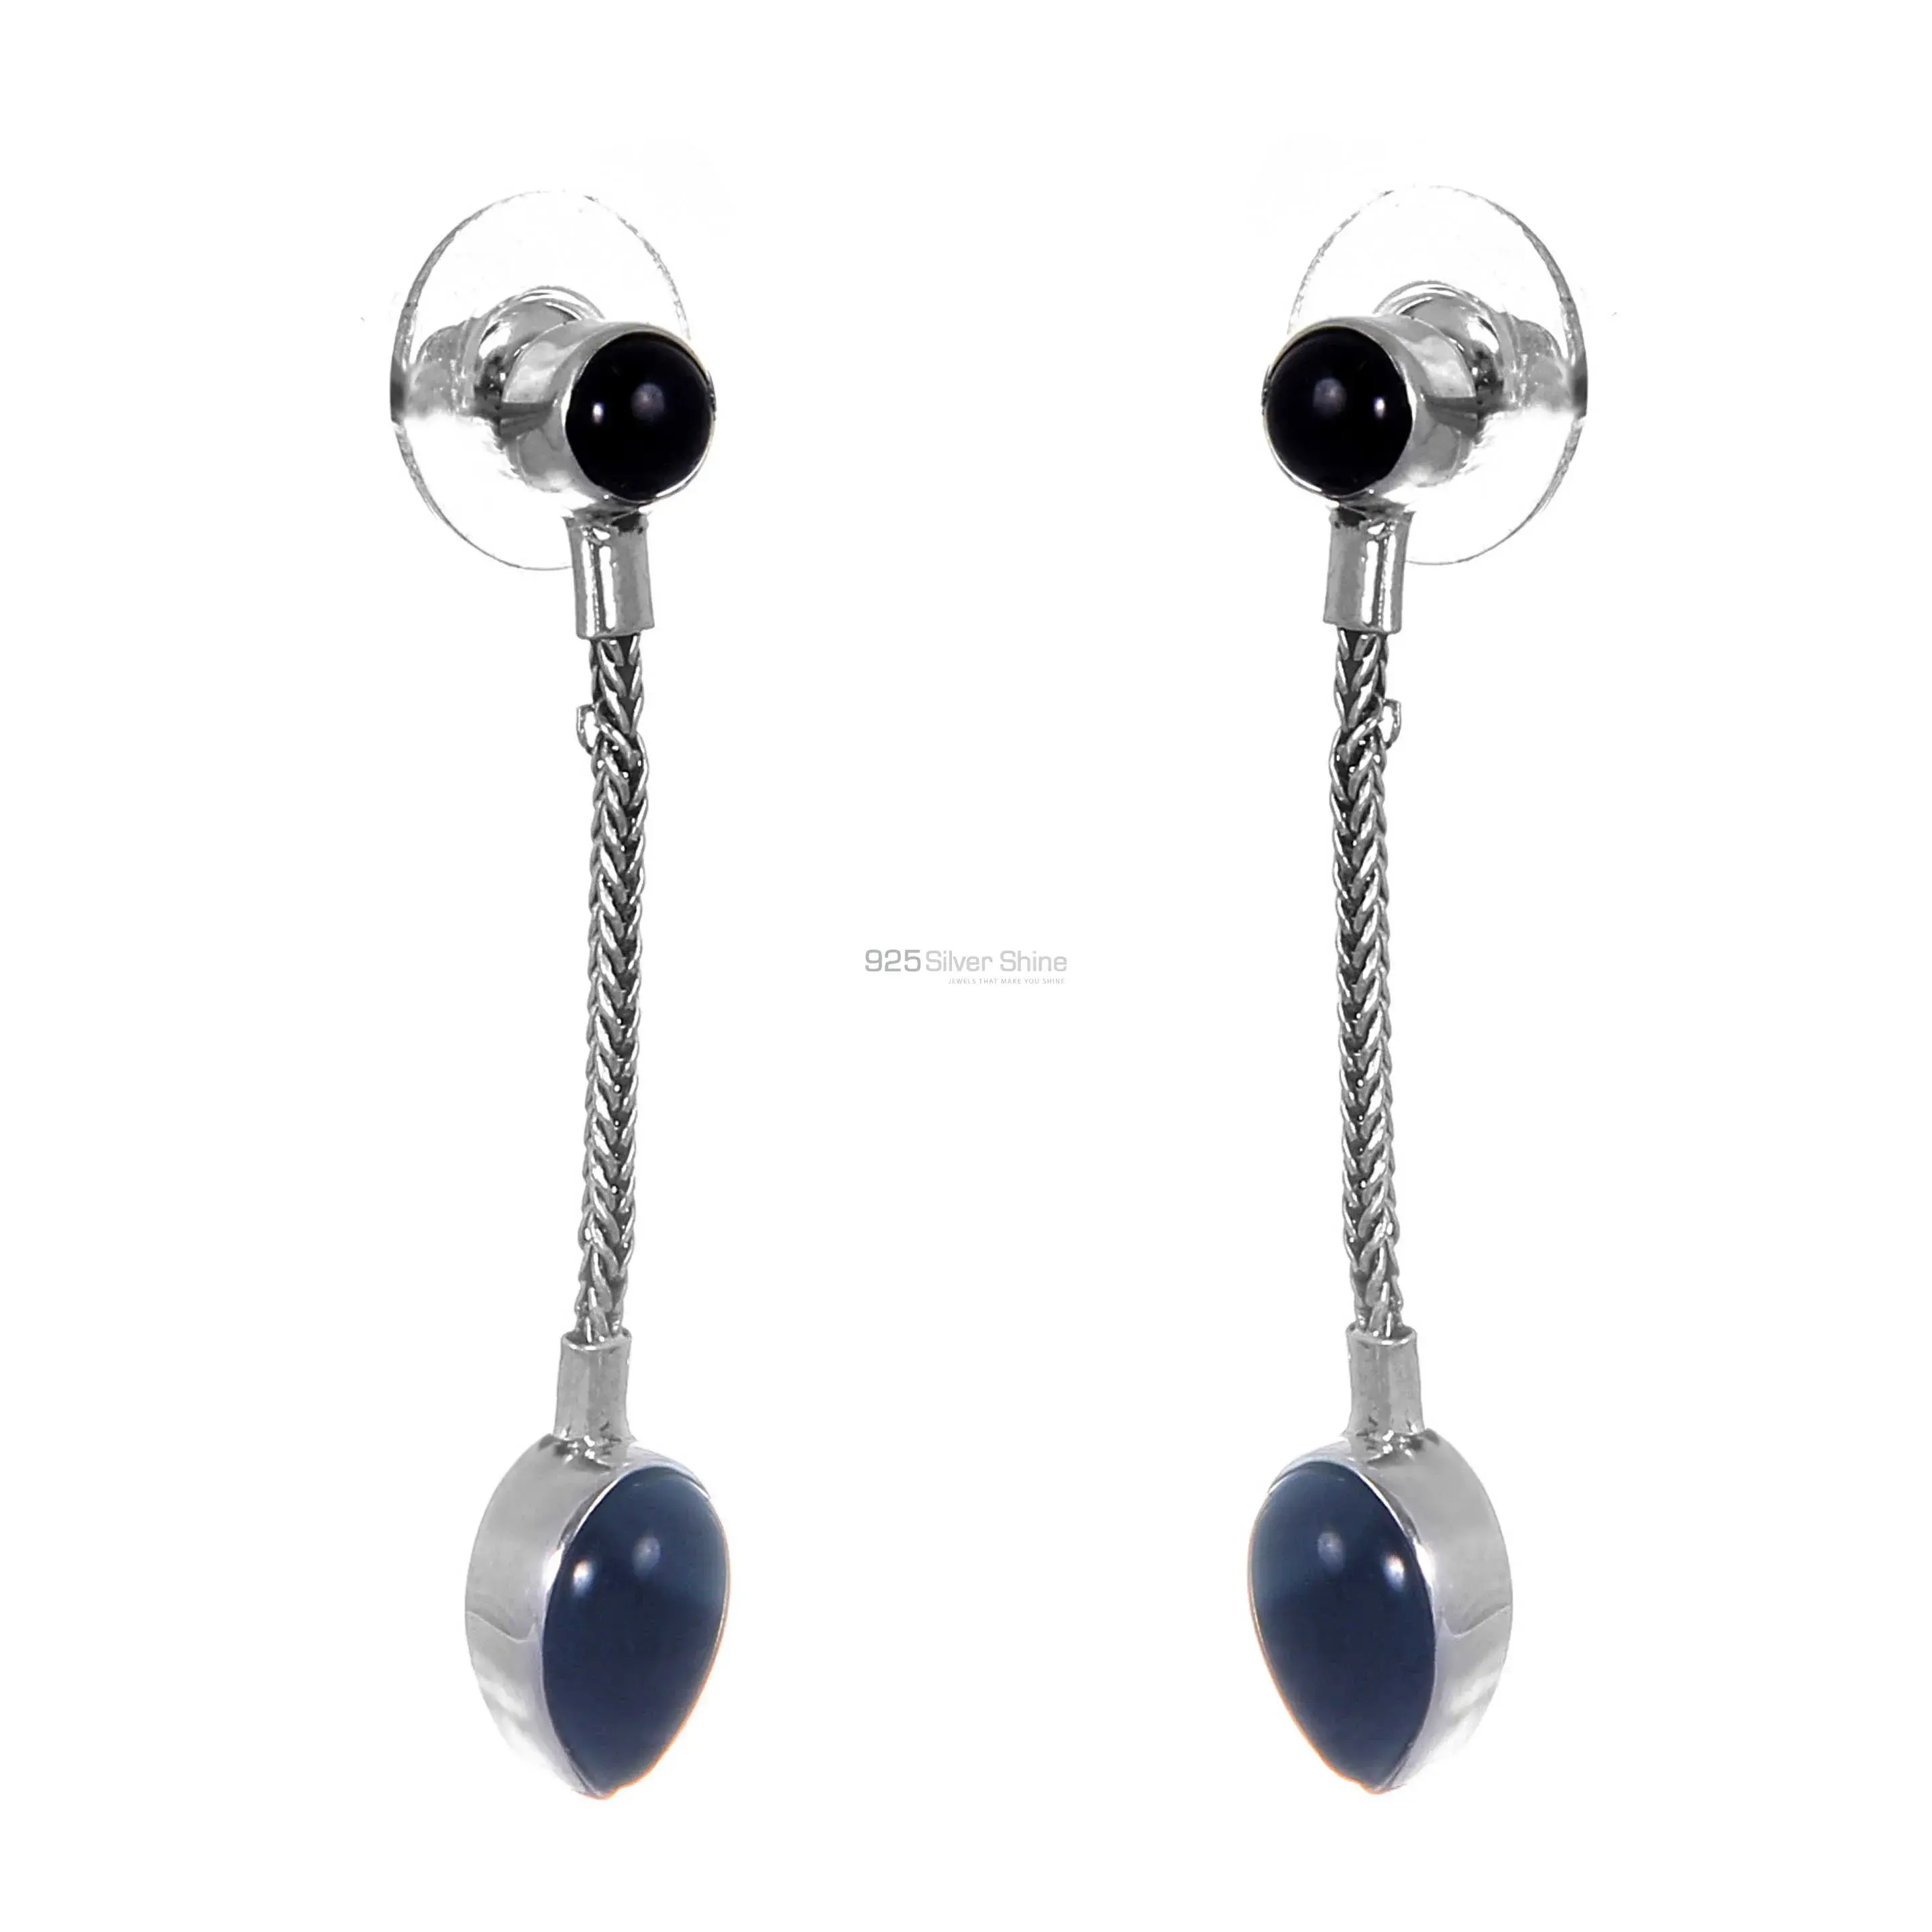 Semi Precious Black onyx Gemstone Earrings Suppliers In 925 Sterling Silver Jewelry 925SE257_0